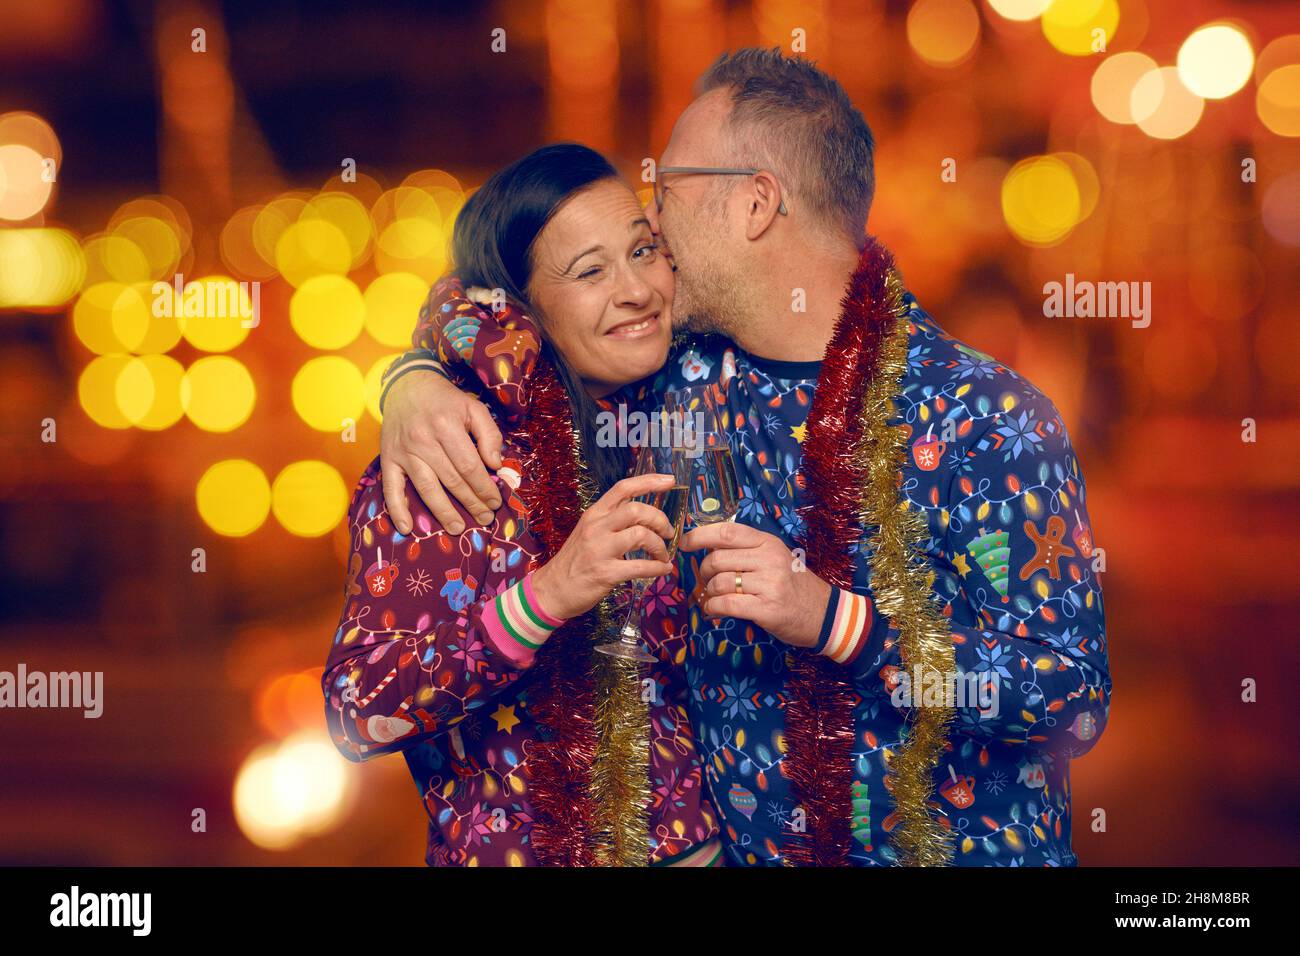 Fröhliches romantisches Paar mittleren Alters, das zu Weihnachten küsst und Champagner trinkt, um die Weihnachtszeit zu feiern, gekleidet in farbenfrohe Weihnachten-Themen-Tops ag Stockfoto